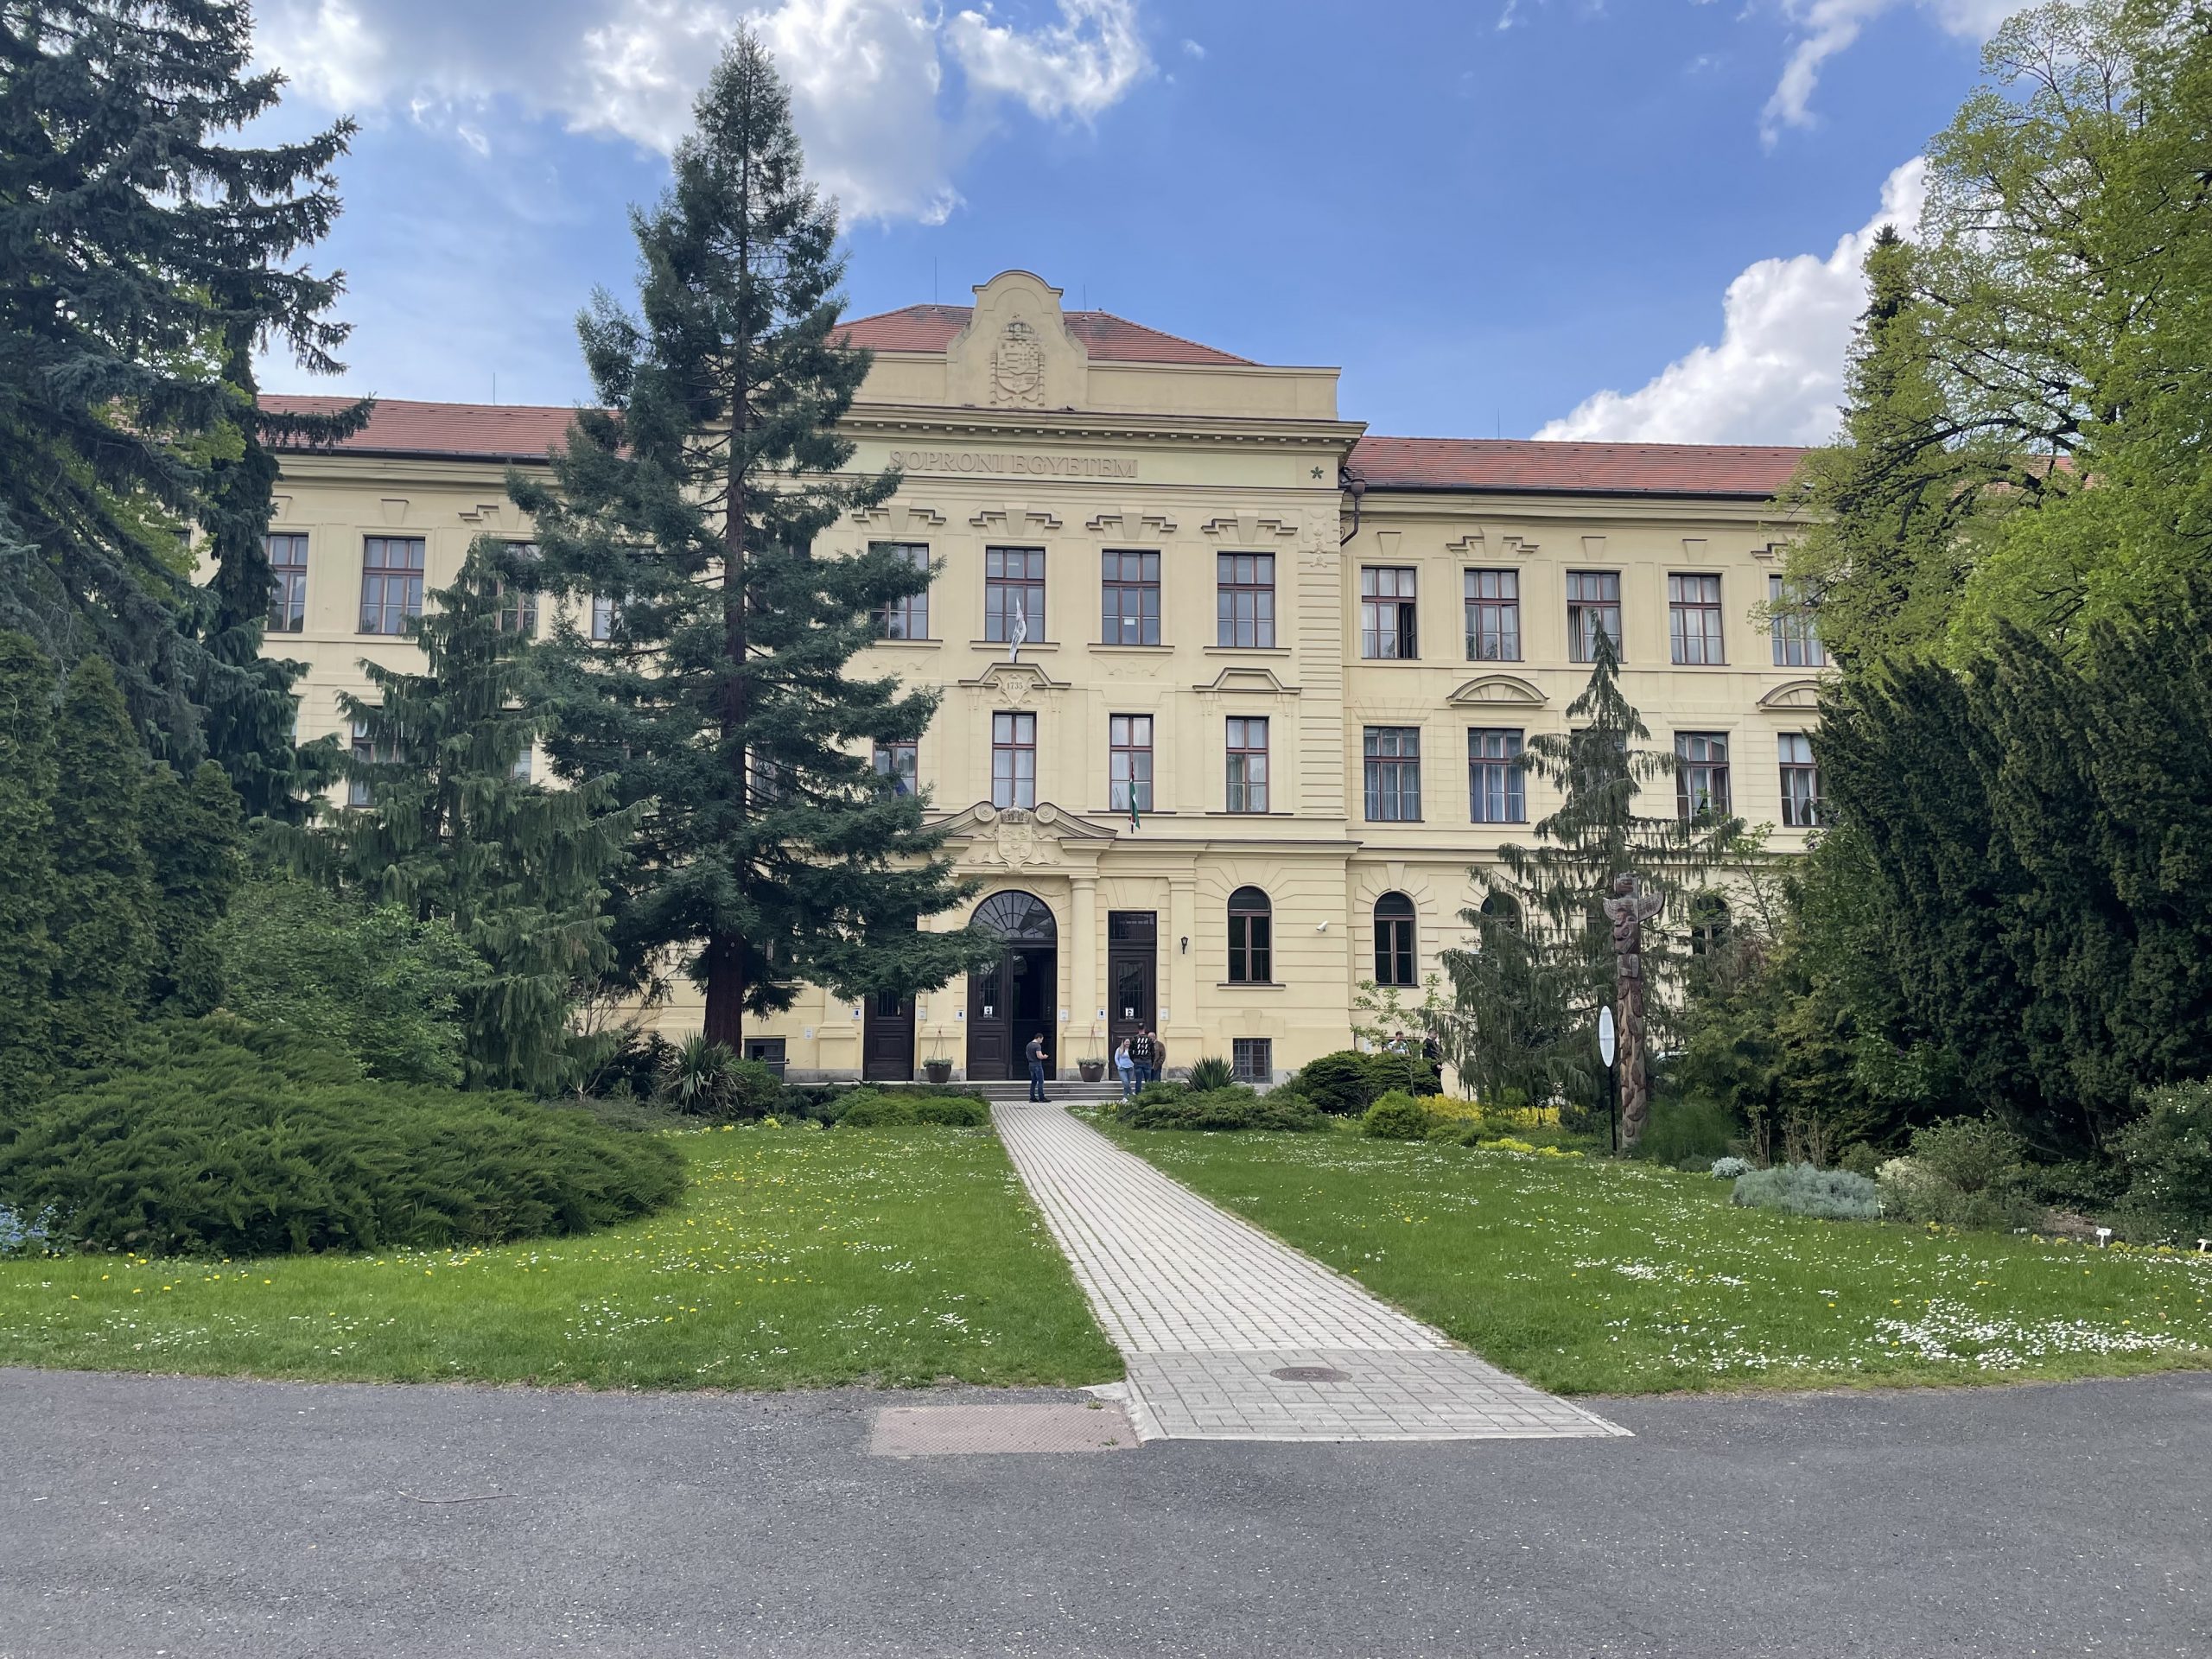 Soproni Egyetem szoros kapcsolat kiépítésén dolgozik a Makovecz Imre örökségét továbbvivő építészekkel.